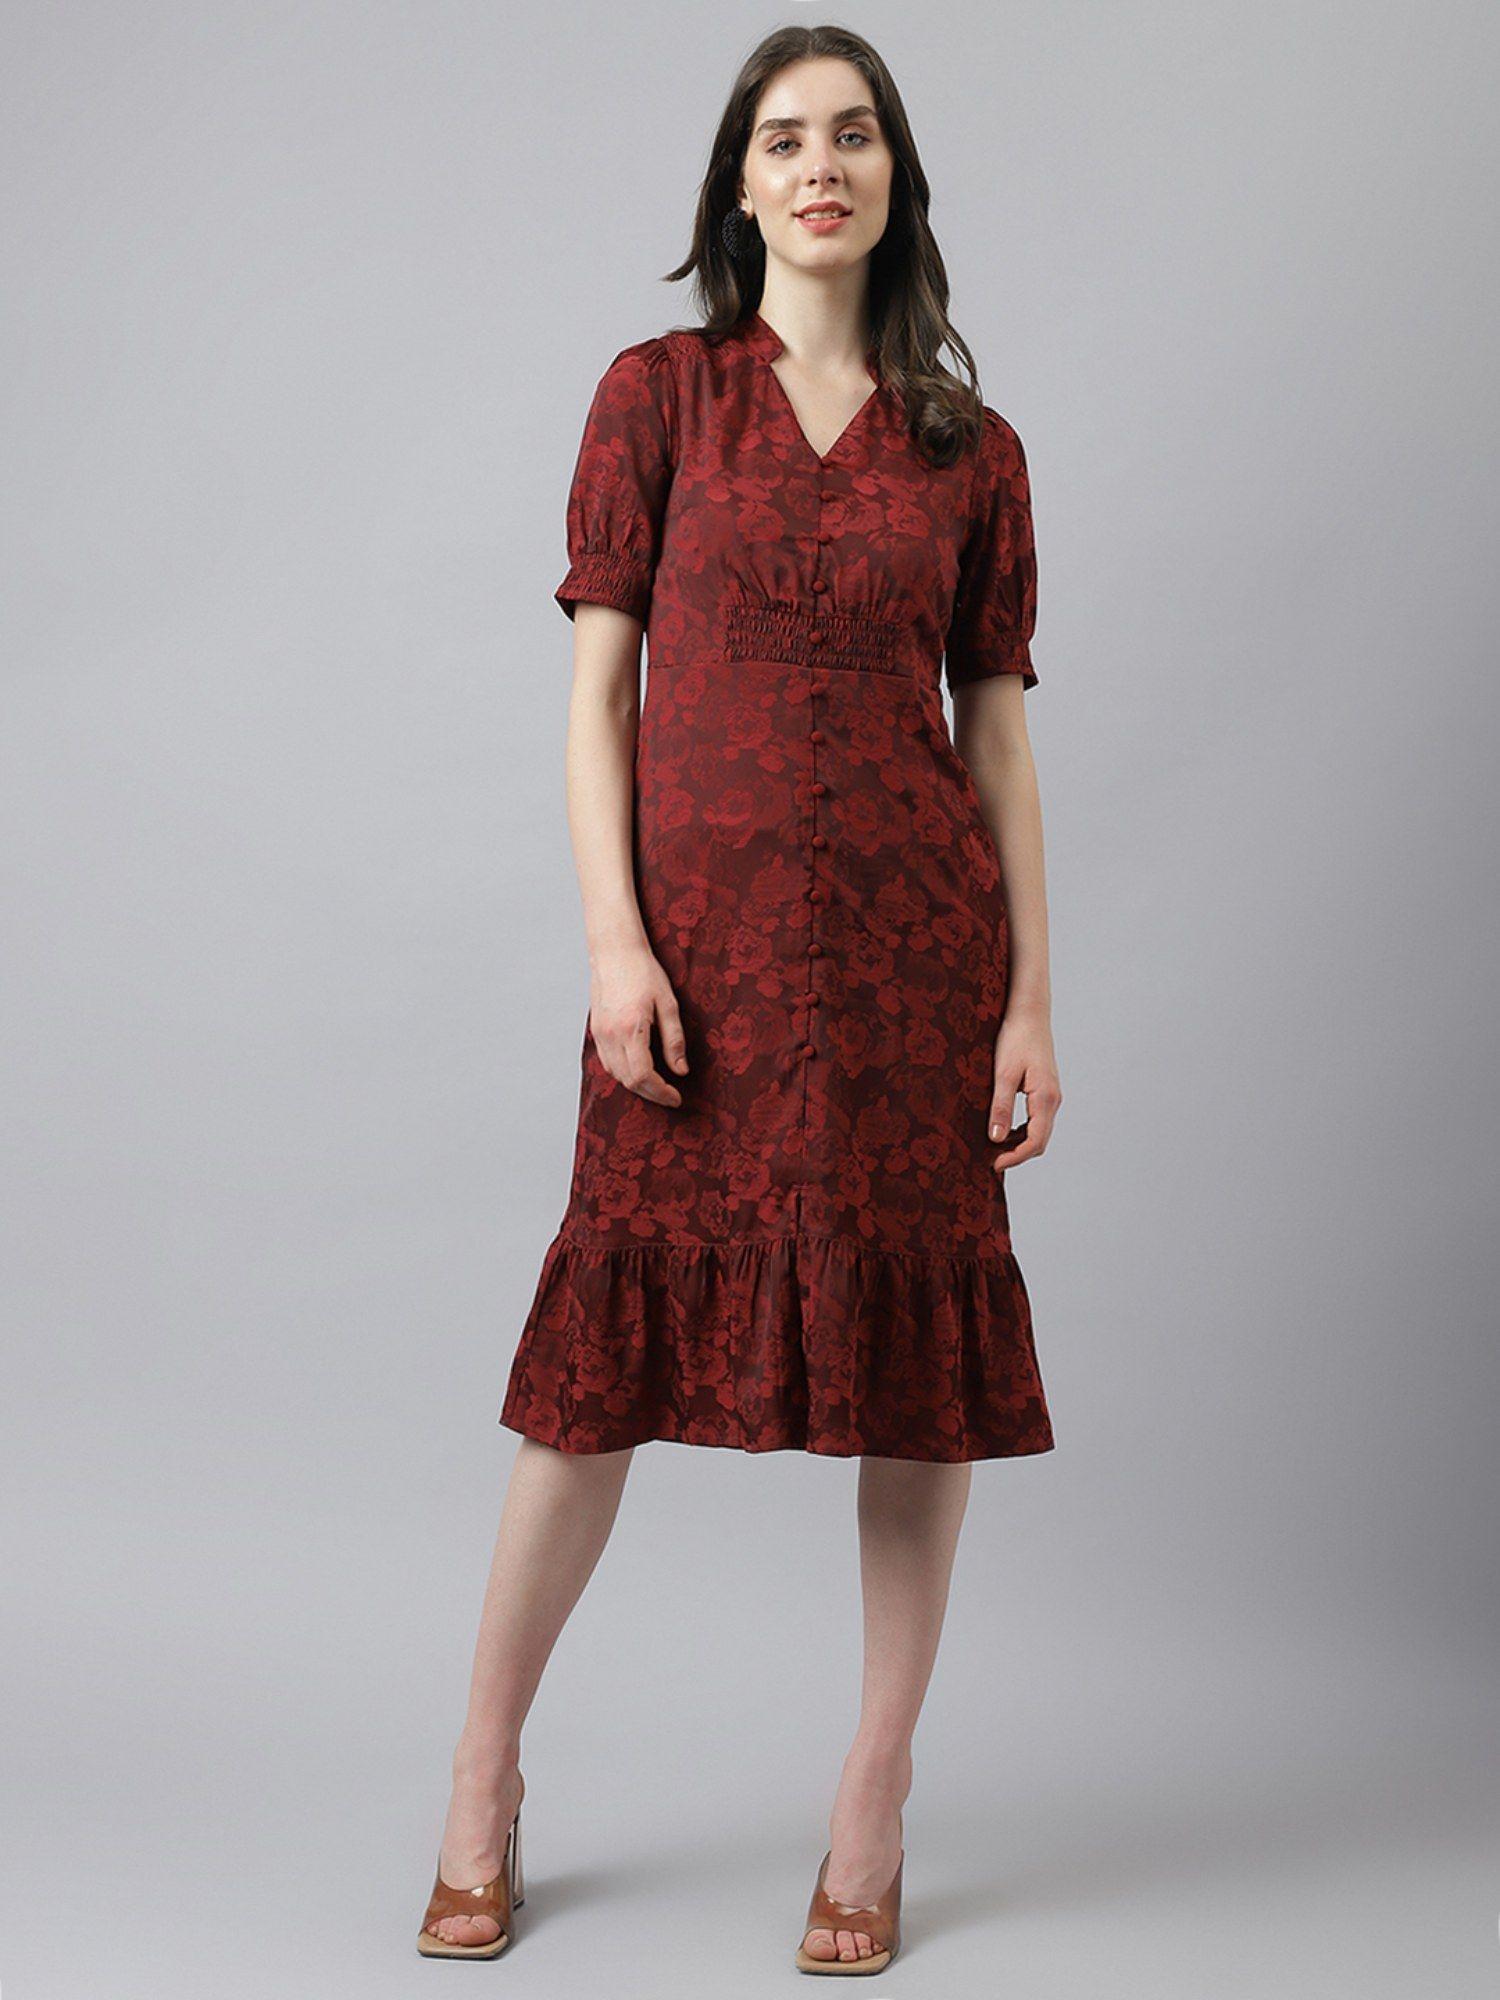 women maroon self flower printed dress with puffer sleeves